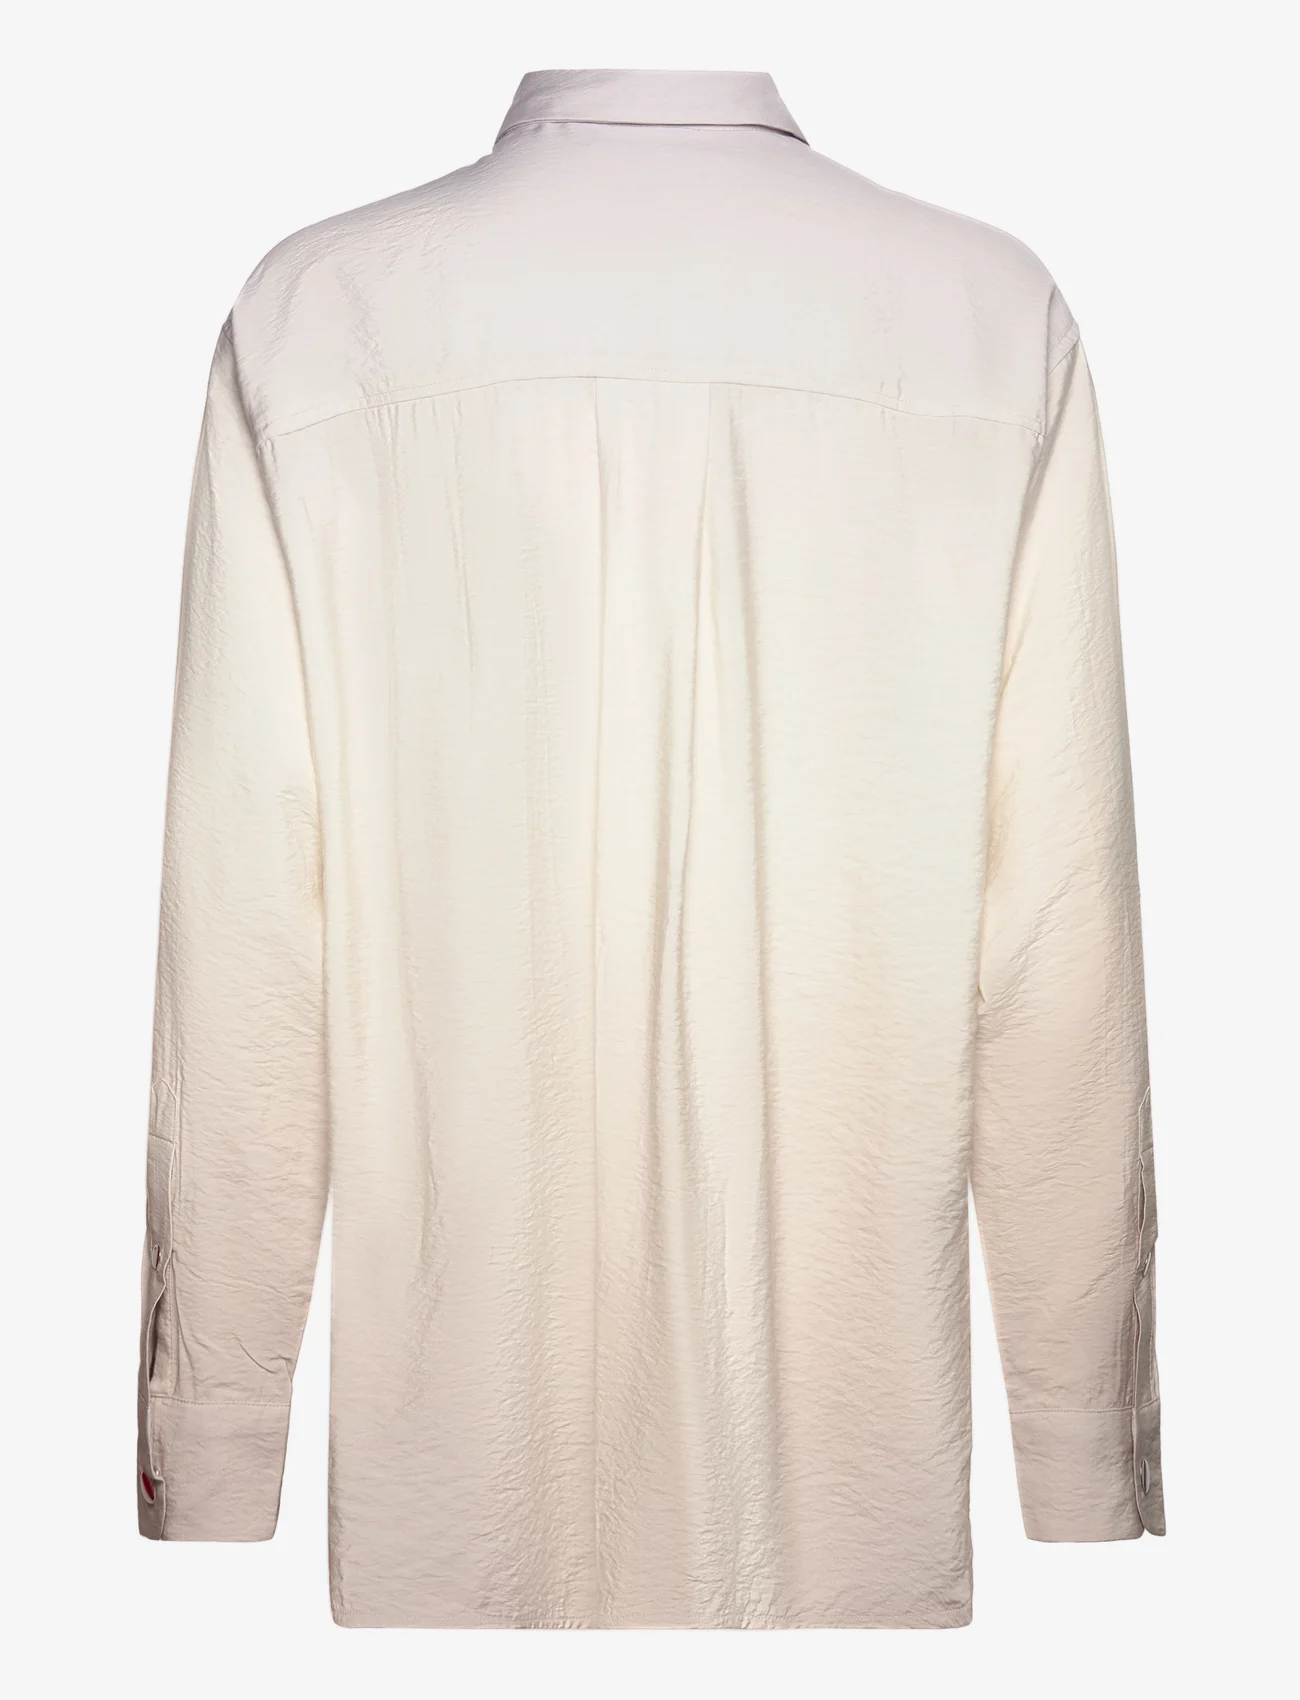 Samsøe Samsøe - Alfrida shirt 14639 - short-sleeved shirts - ombre cloud - 1